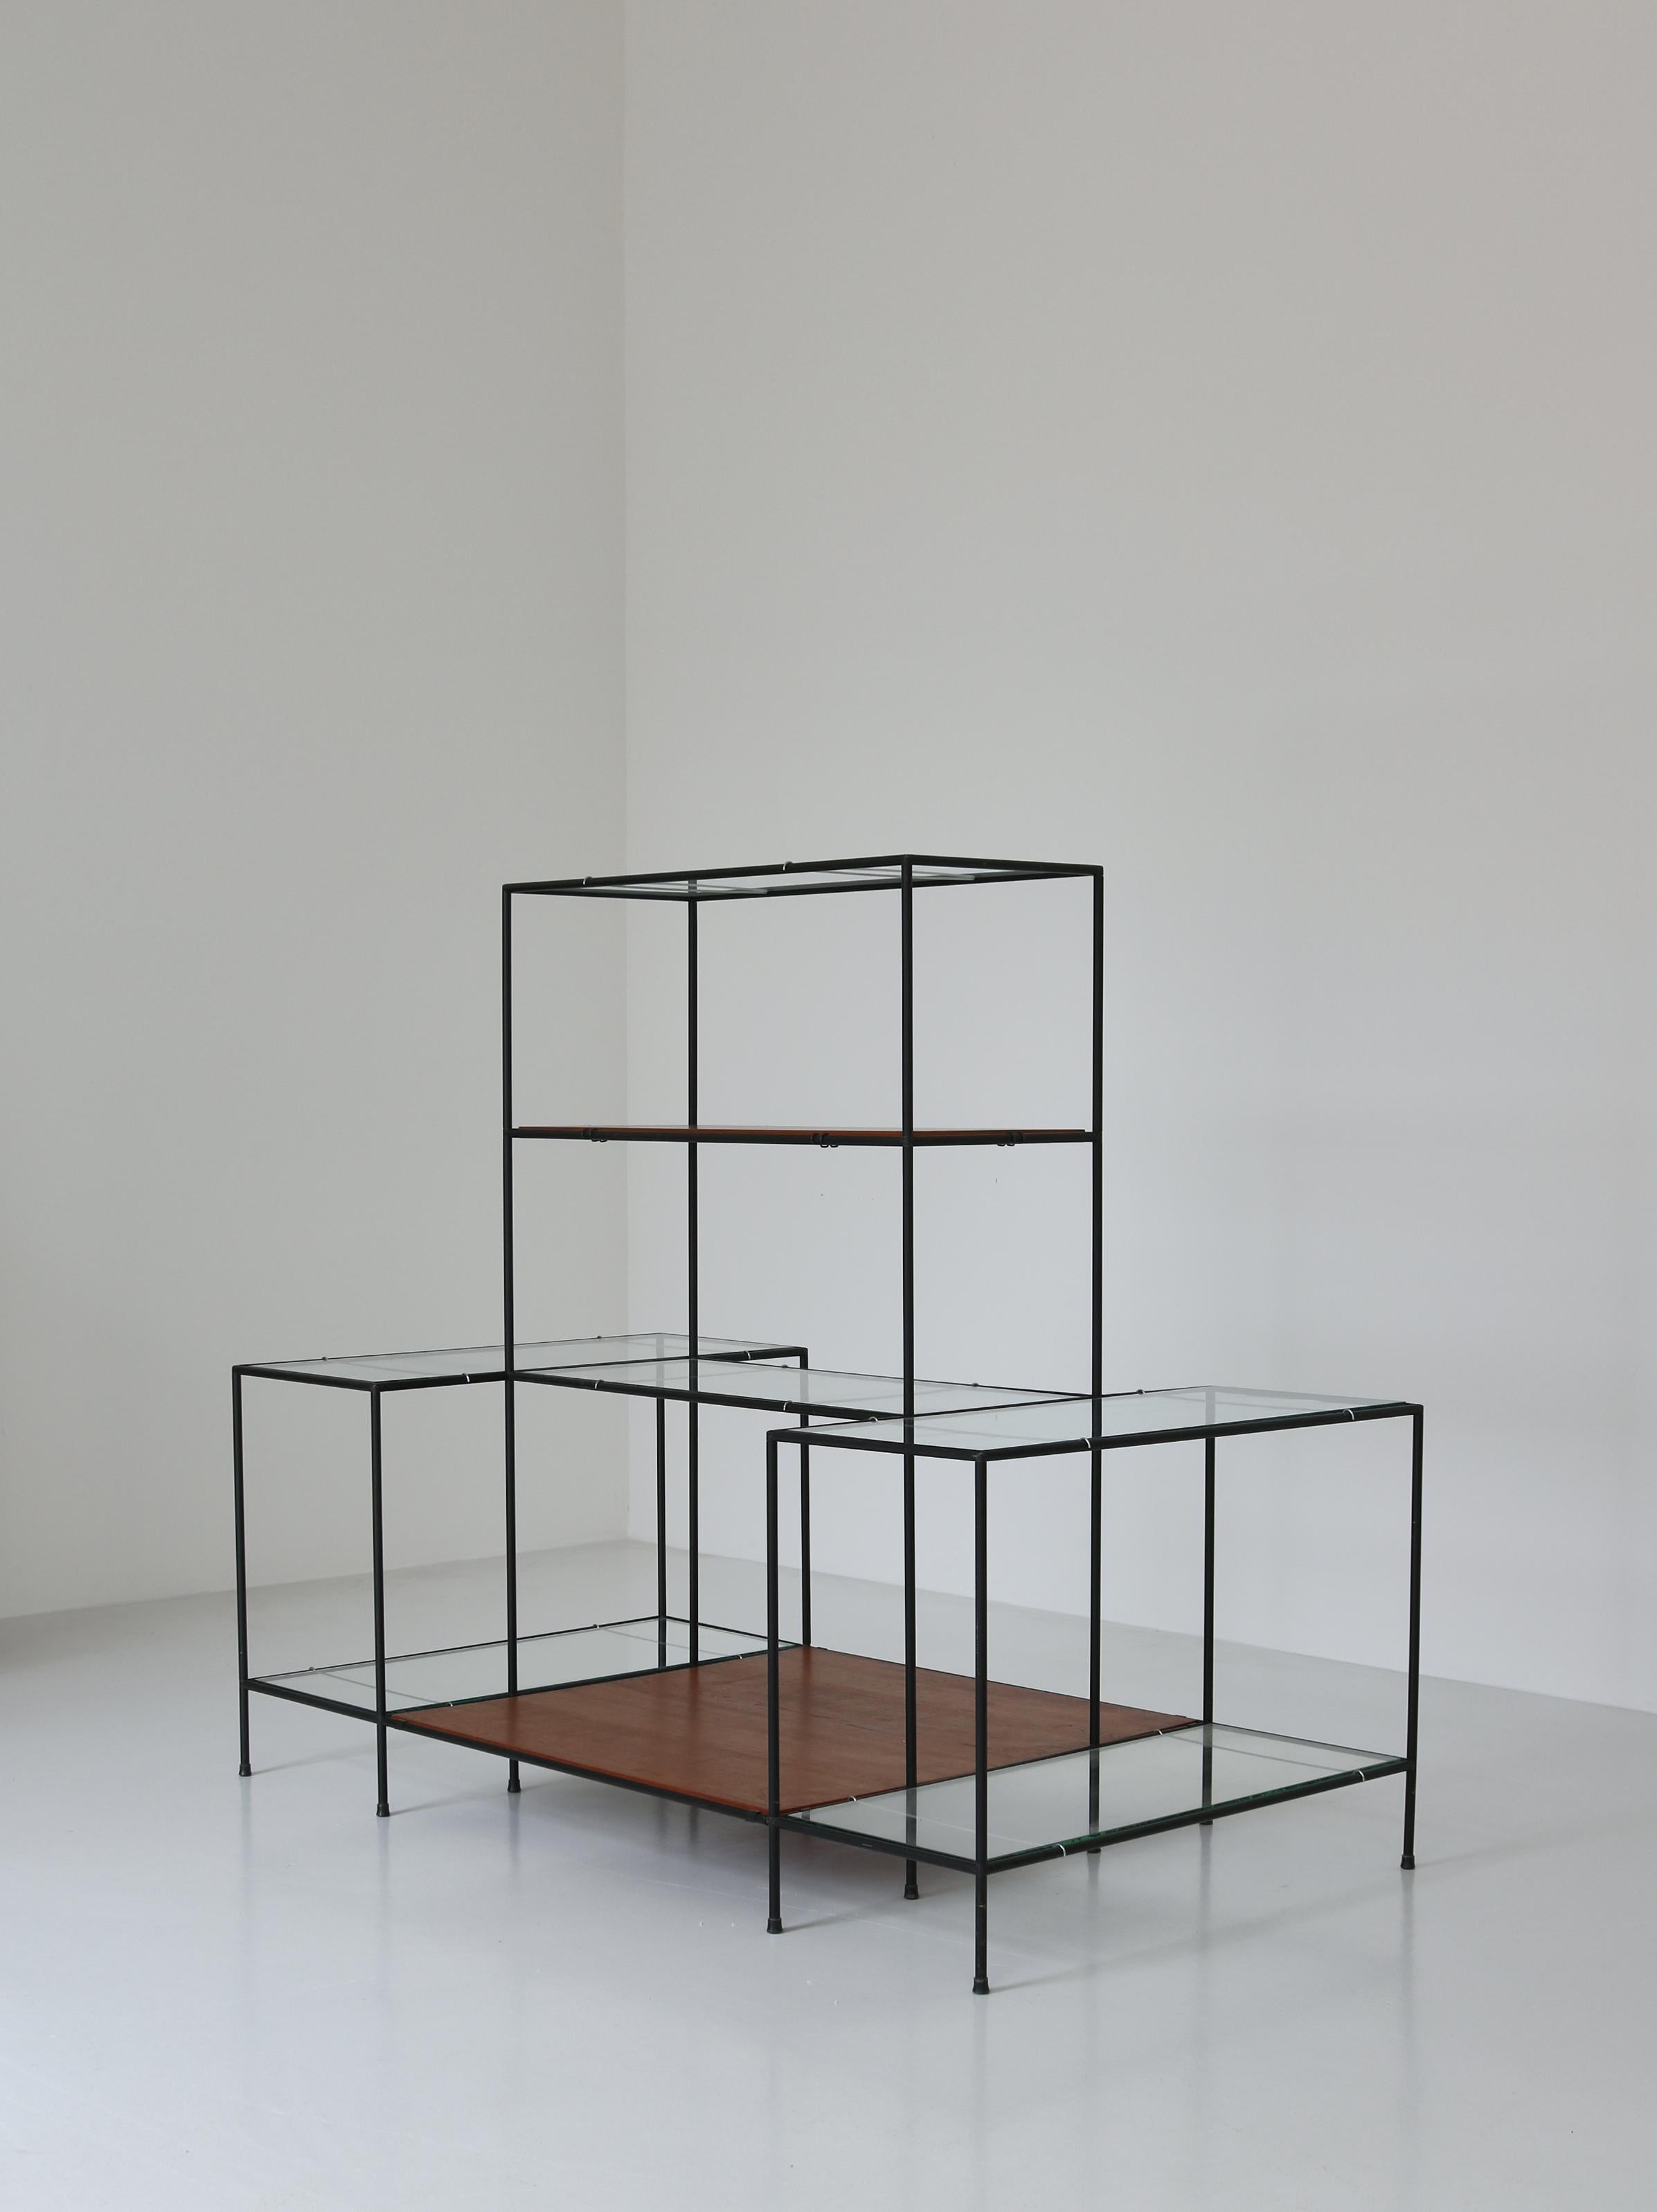 Ingénieuse étagère ou présentoir minimaliste SYSTEM ABSTRACTA conçu par Poul Cadovius, Danemark, dans les années 1960. Le système se compose de tubes métalliques noirs avec des connecteurs brevetés, de bois de teck flottant et d'étagères en verre